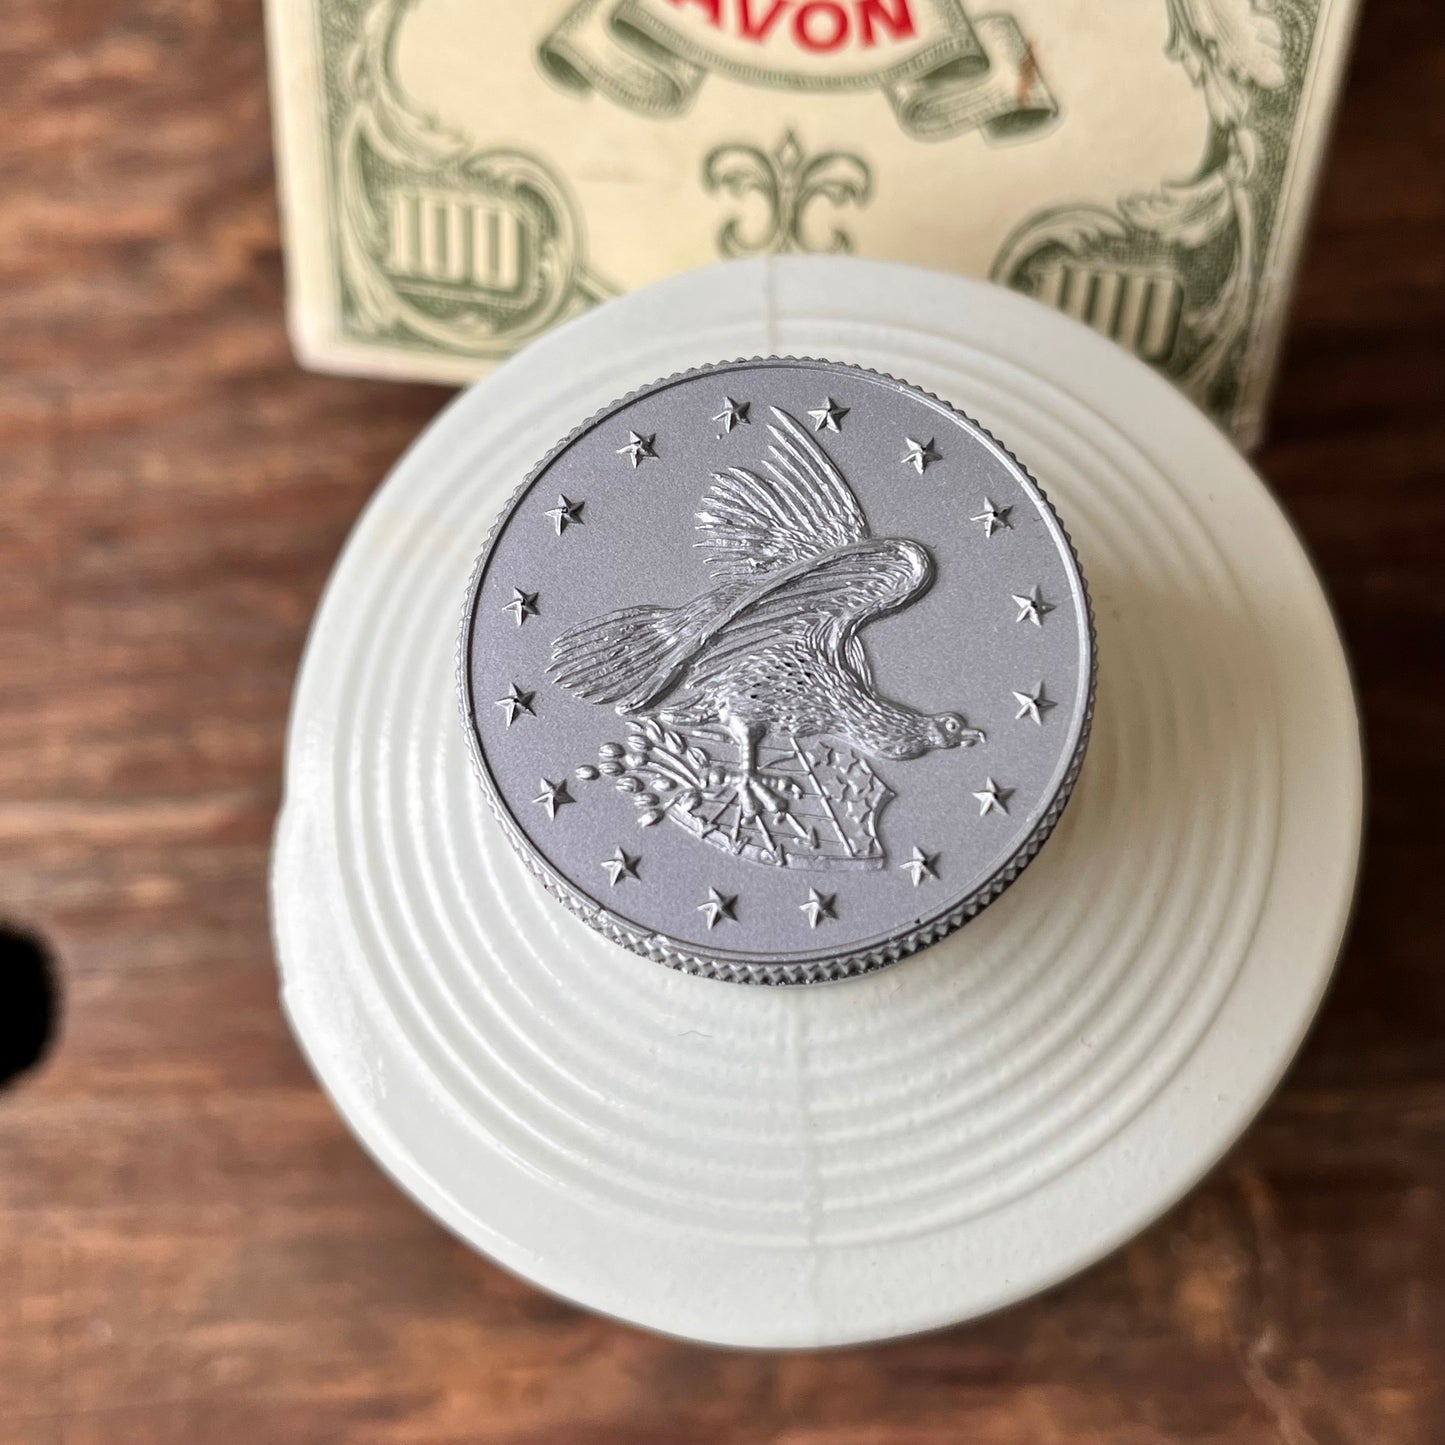 【USA vintage】Avon Dollars N Scent Money $100 Bill